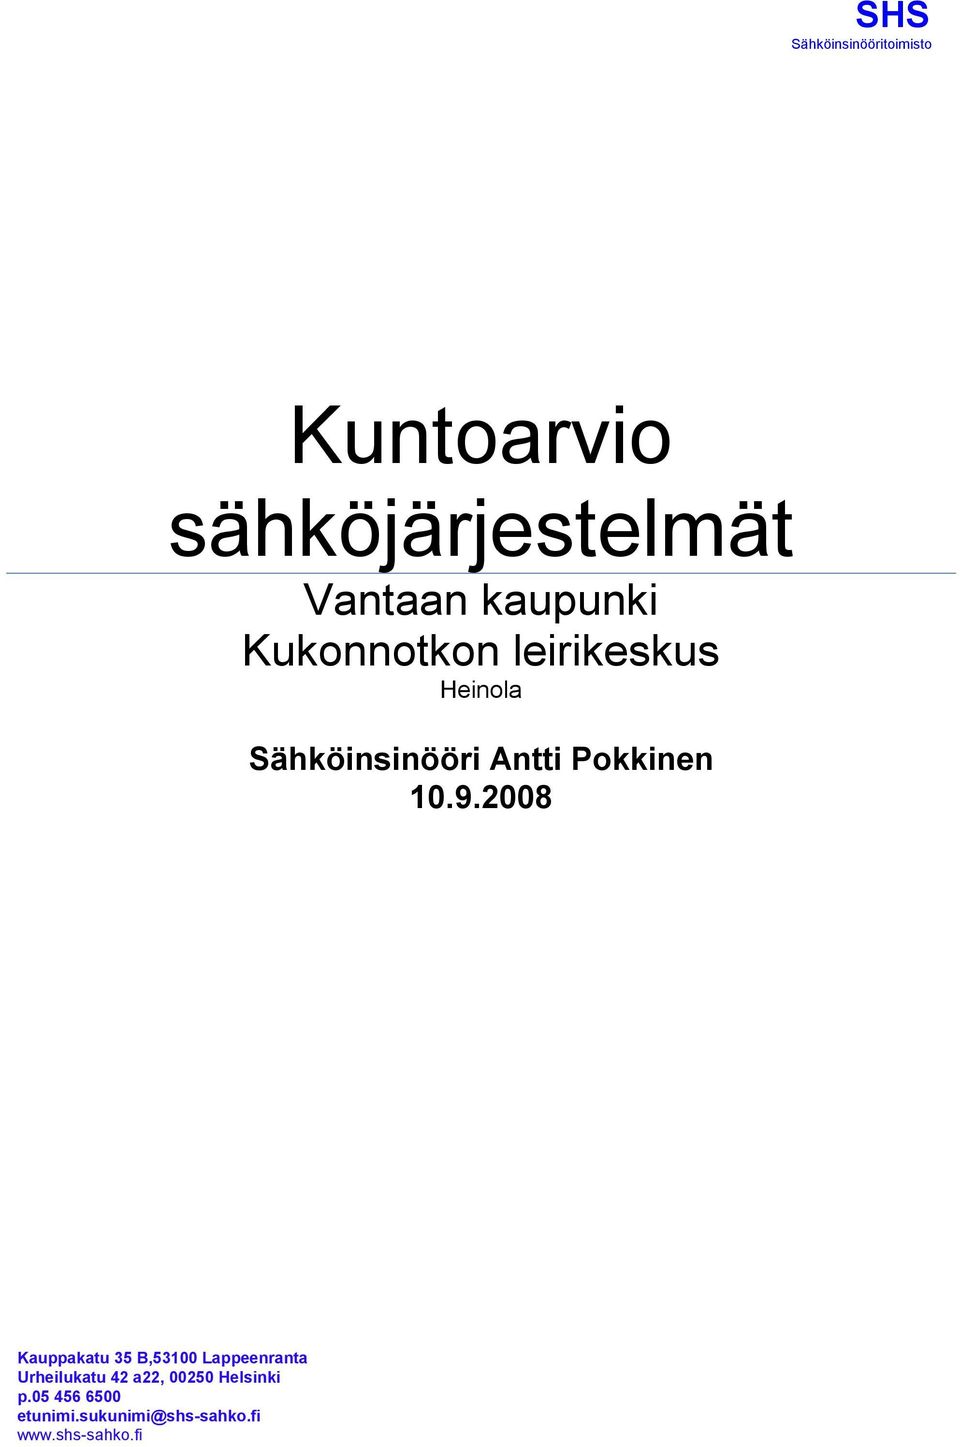 2008 Kauppakatu 35 B,53100 Lappeenranta Urheilukatu 42 a22,